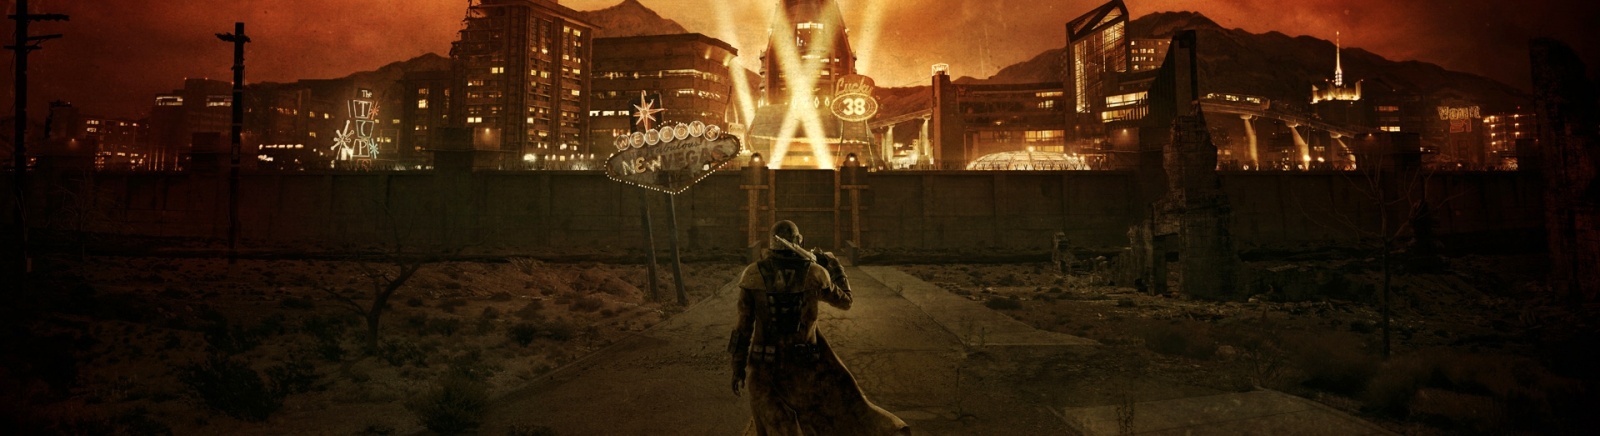 Дата выхода Fallout: New Vegas  на PC, PS3 и Xbox 360 в России и во всем мире